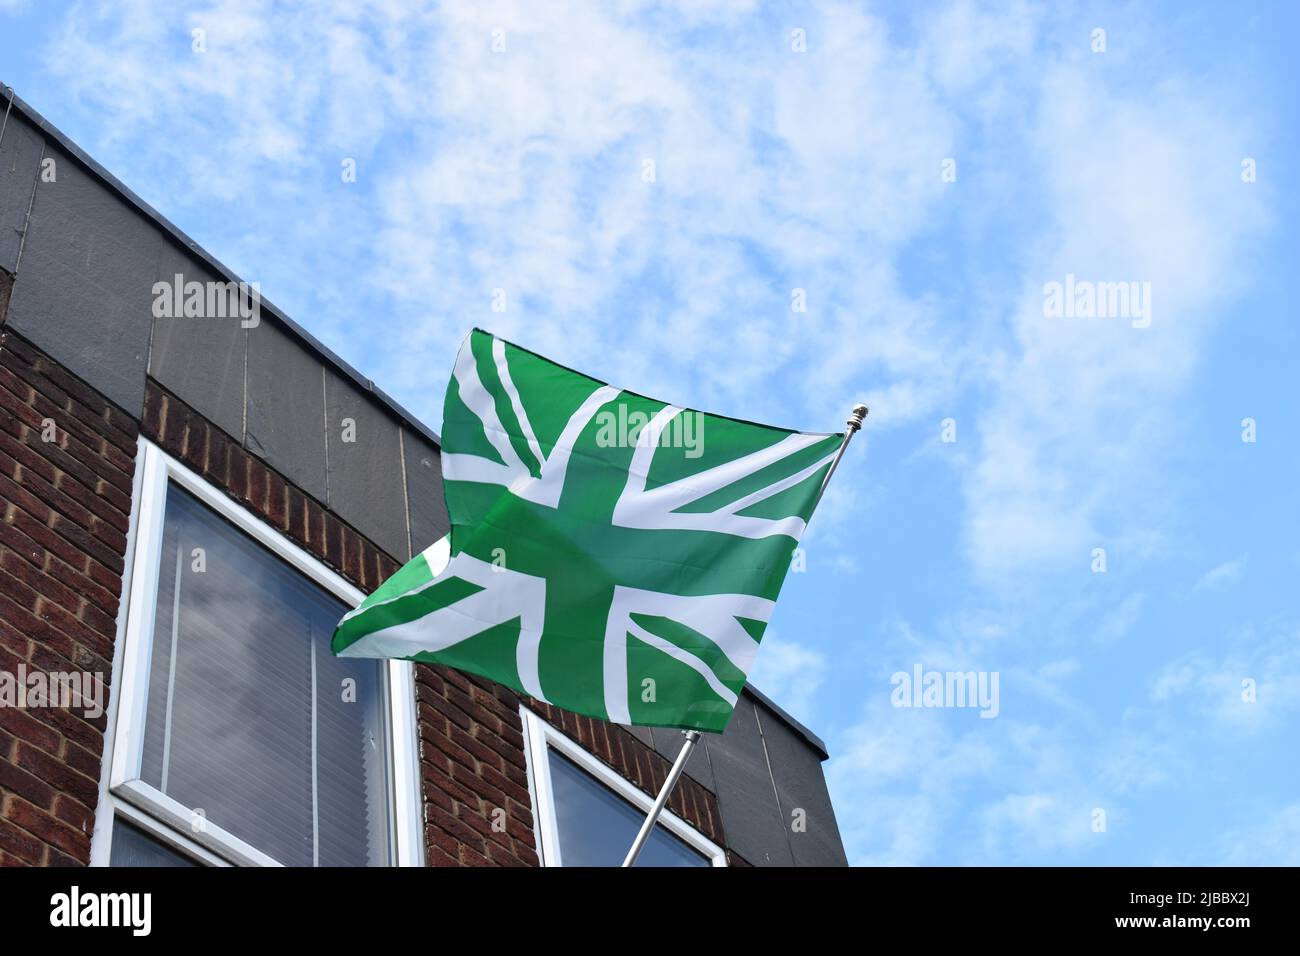 La bandiera verde è stata volata a Newport Pagnell per celebrare Newport Pagnell Town Football Club vincendo il fa Vase. I colori NPTFC sono verde e bianco. Foto Stock